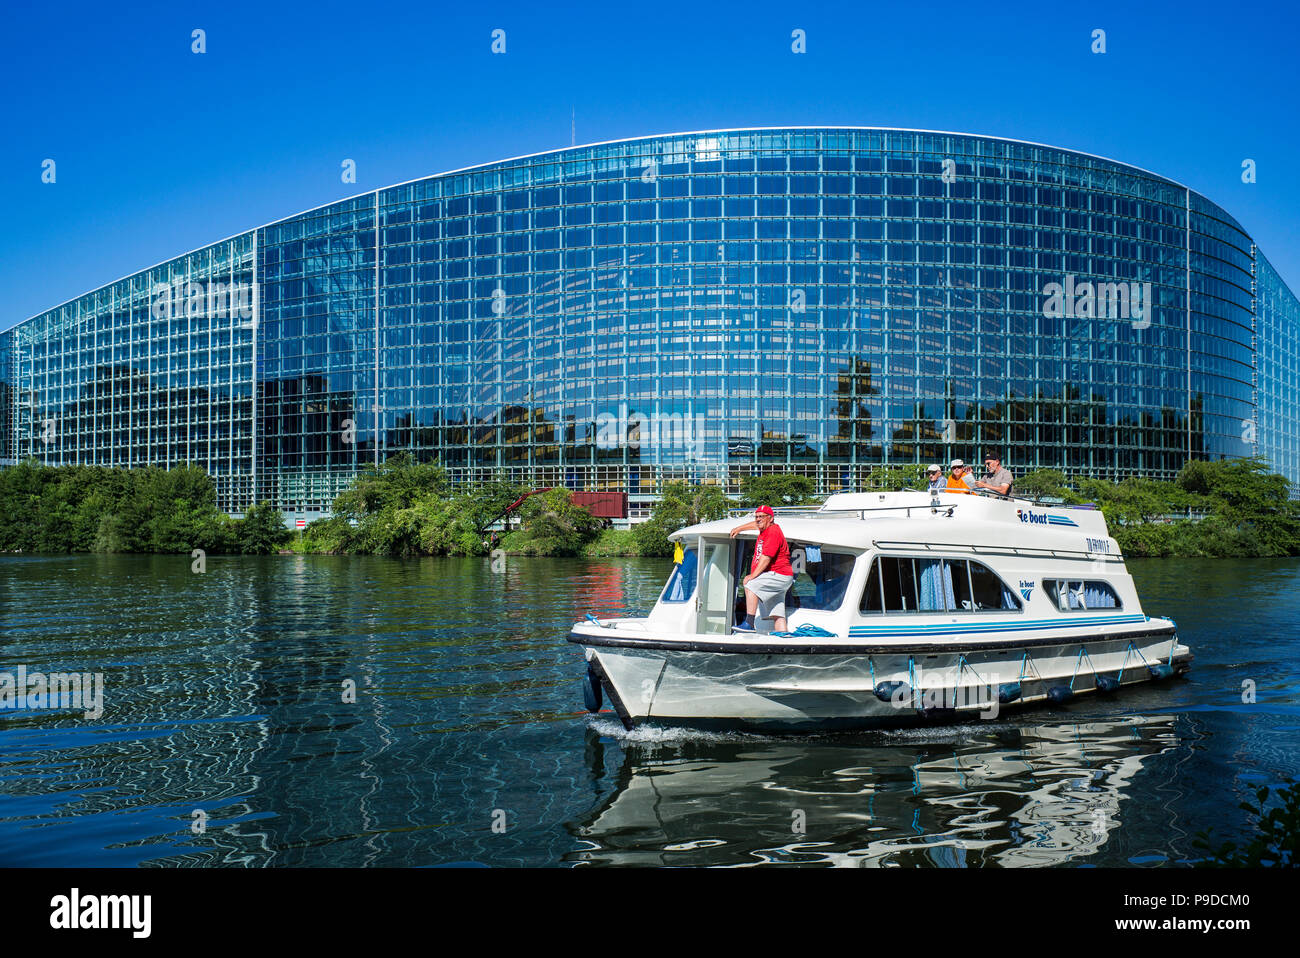 Strasbourg, navire de plaisance croisière sur l'Ill, bâtiment Louise Weiss, Parlement européen, Alsace, France, Europe, Banque D'Images